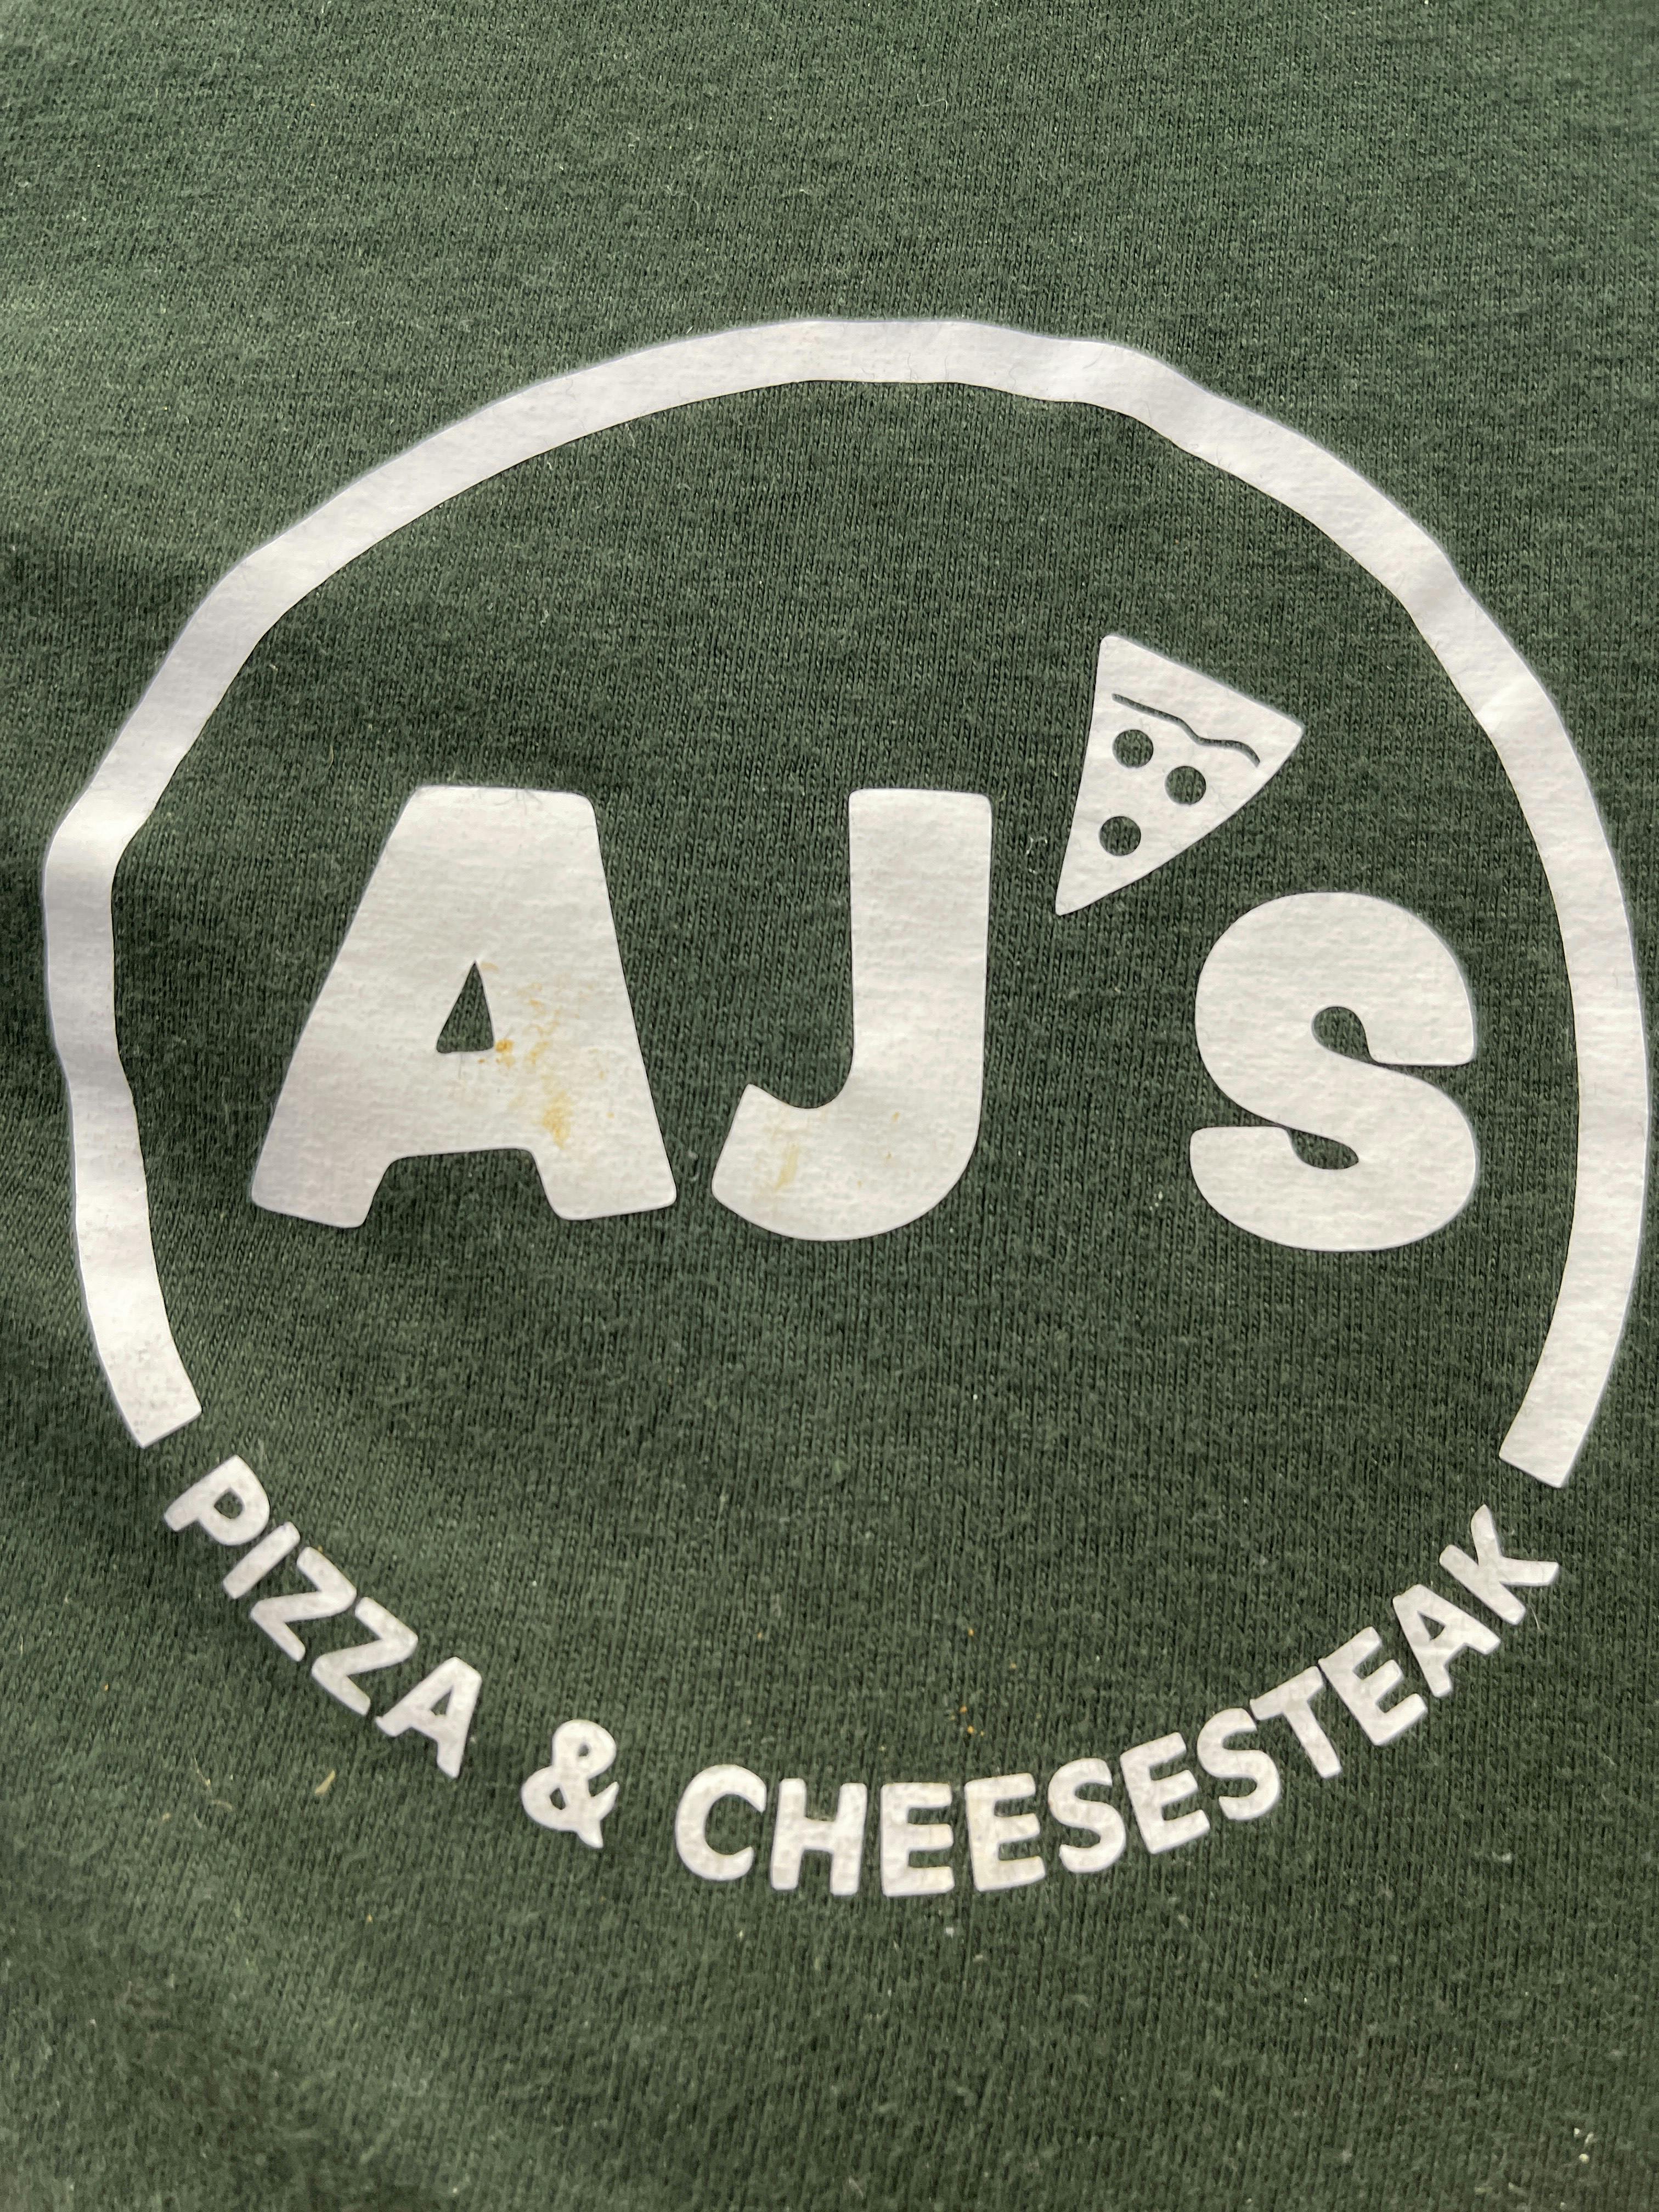 Az Pizza Cheesesteak Logo